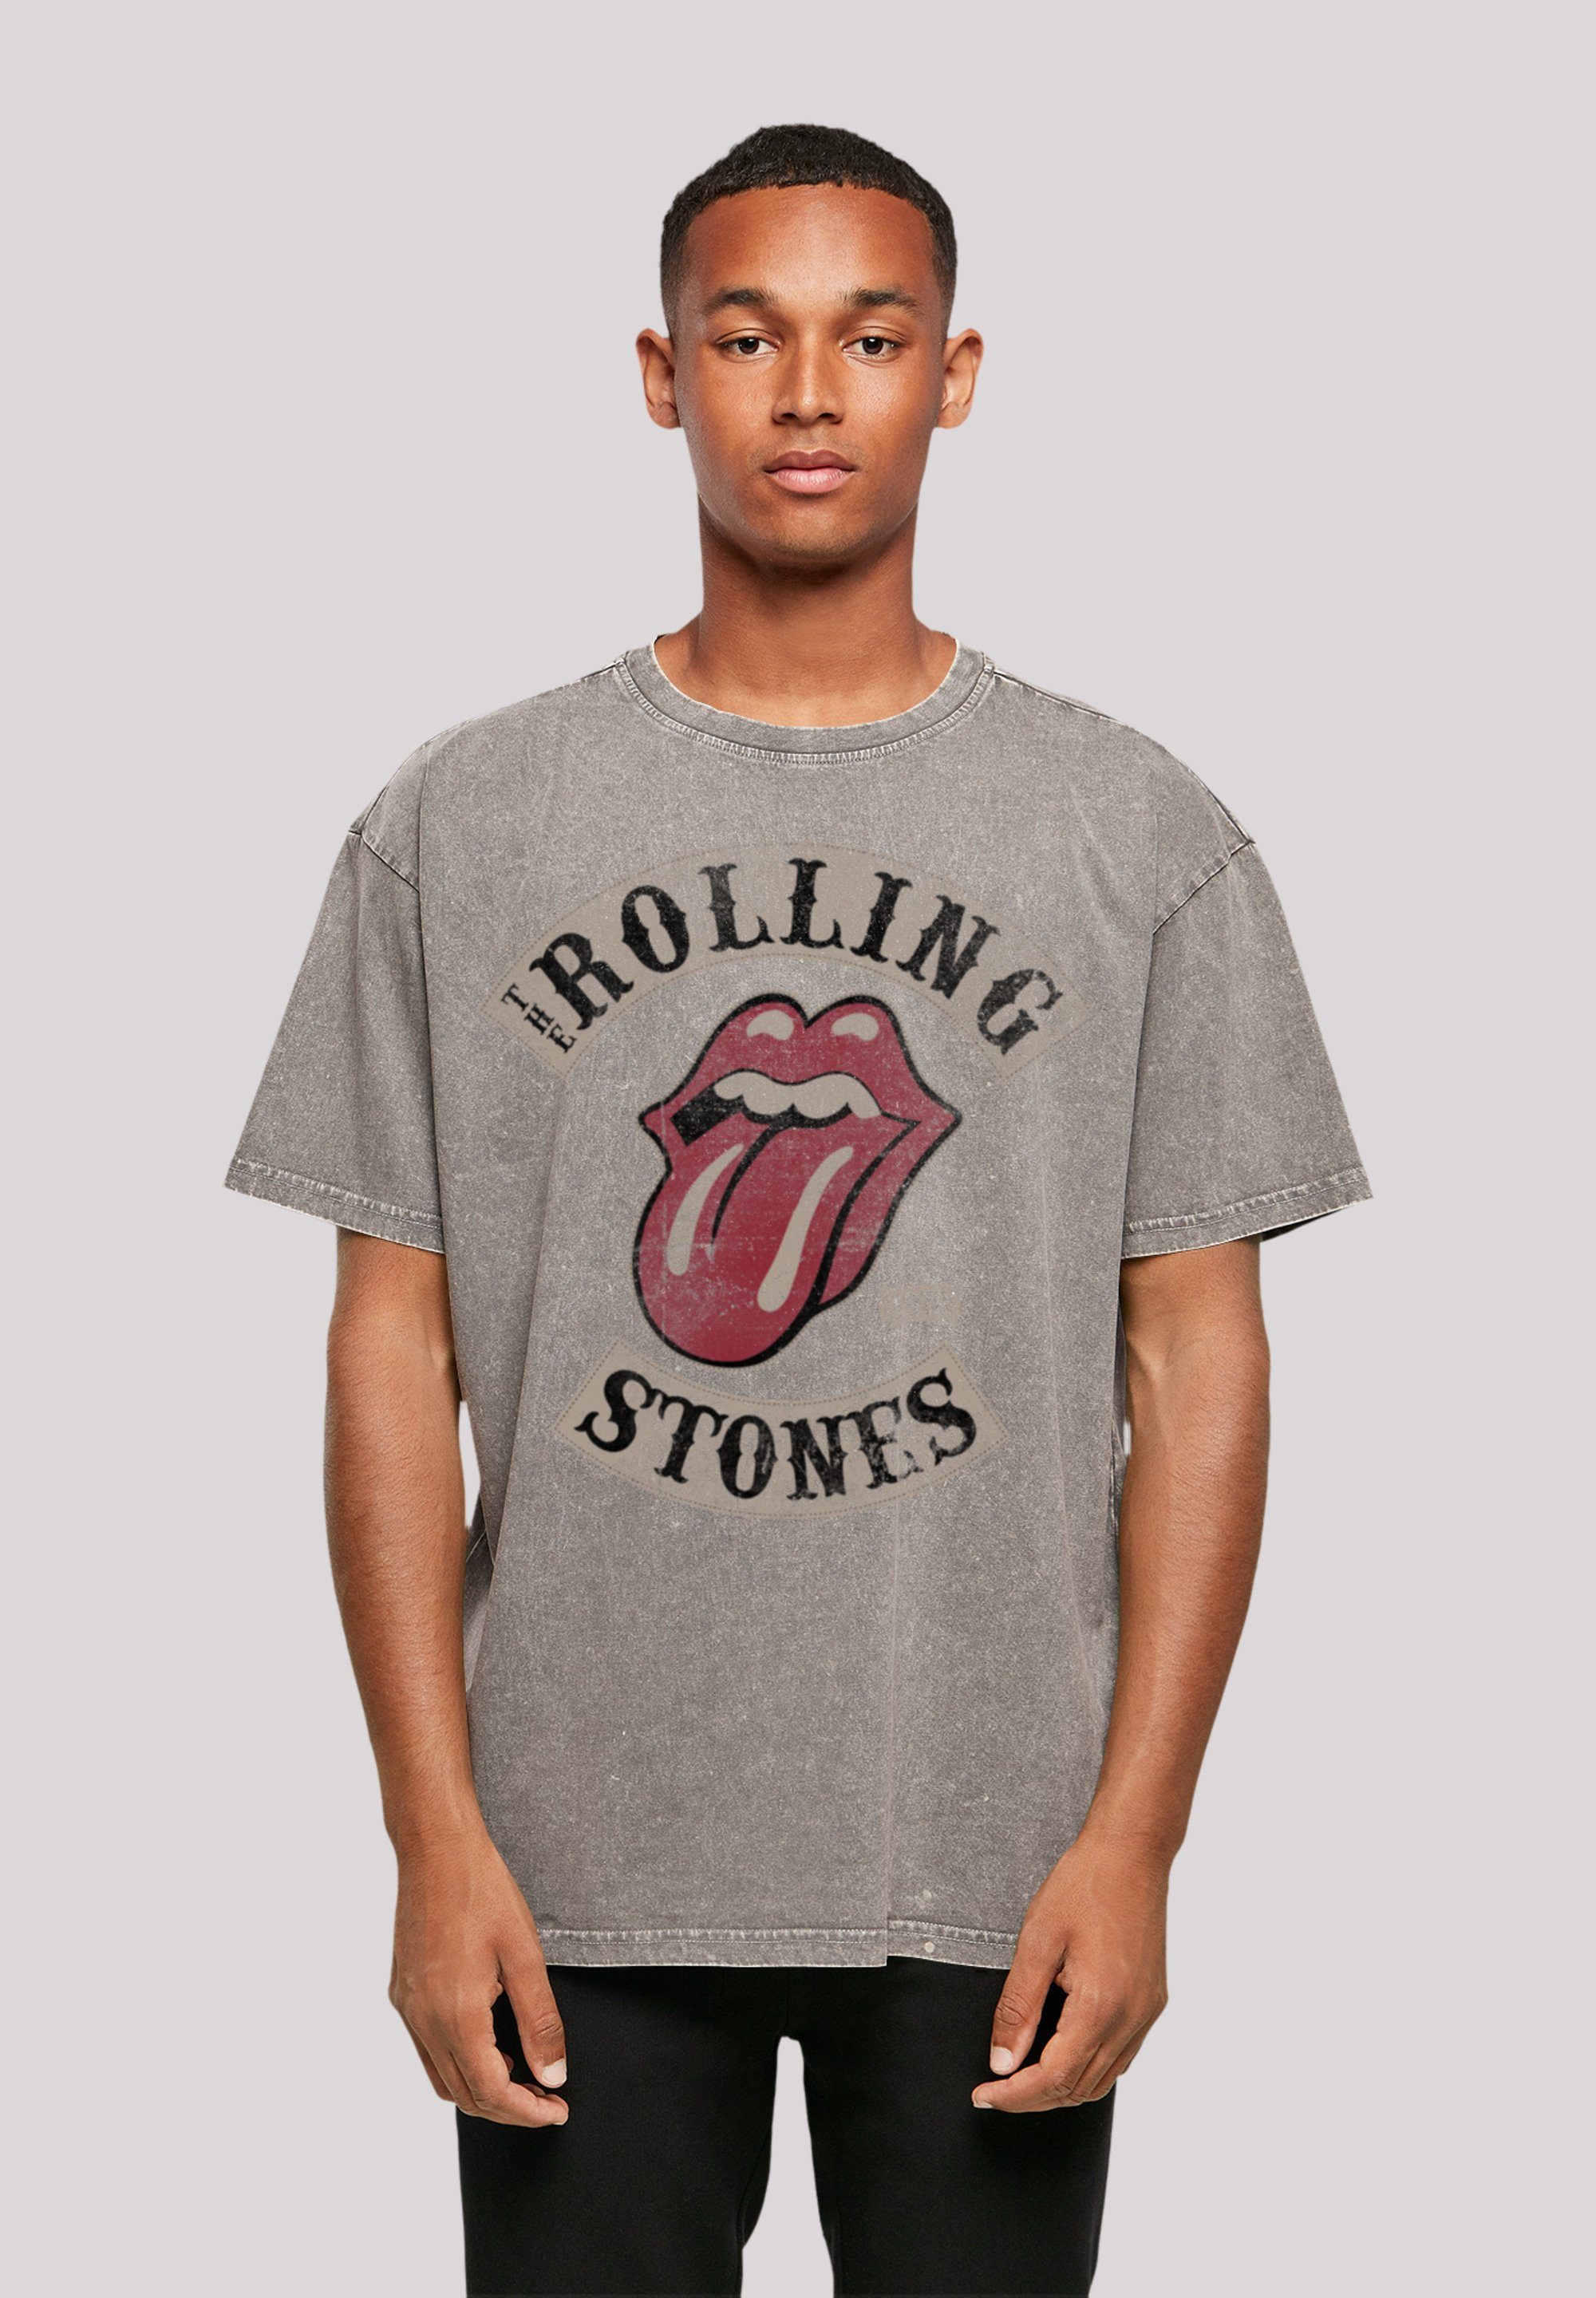 F4NT4STIC T-Shirt The Rolling Tour Fällt Stones bitte aus, Größe kleiner \'78 bestellen eine weit Print